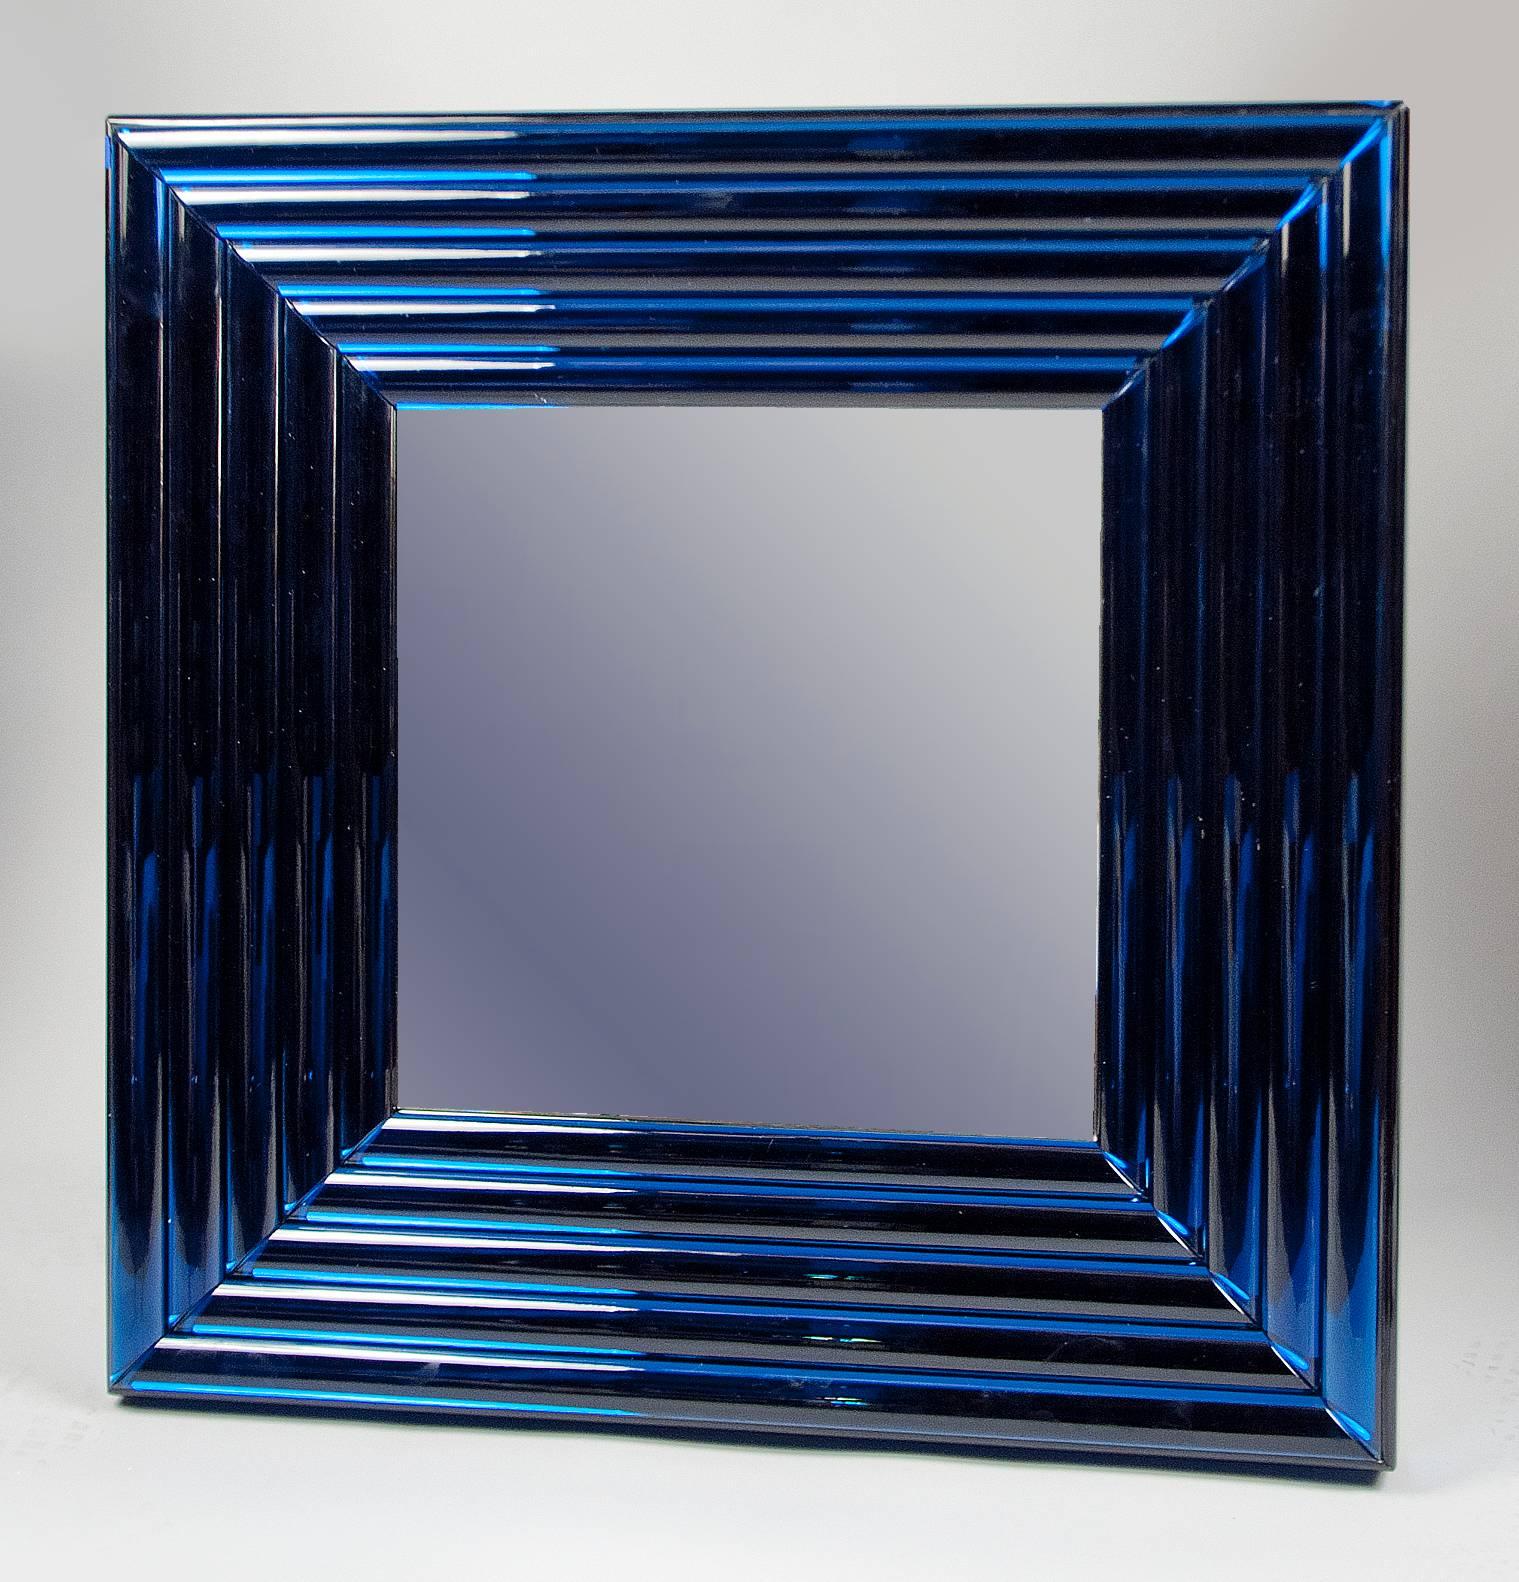 Verre miroir carré, entouré de cinq cadres emboîtés composés de panneaux de verre bleu miroir Vintage. Velluto signifie 